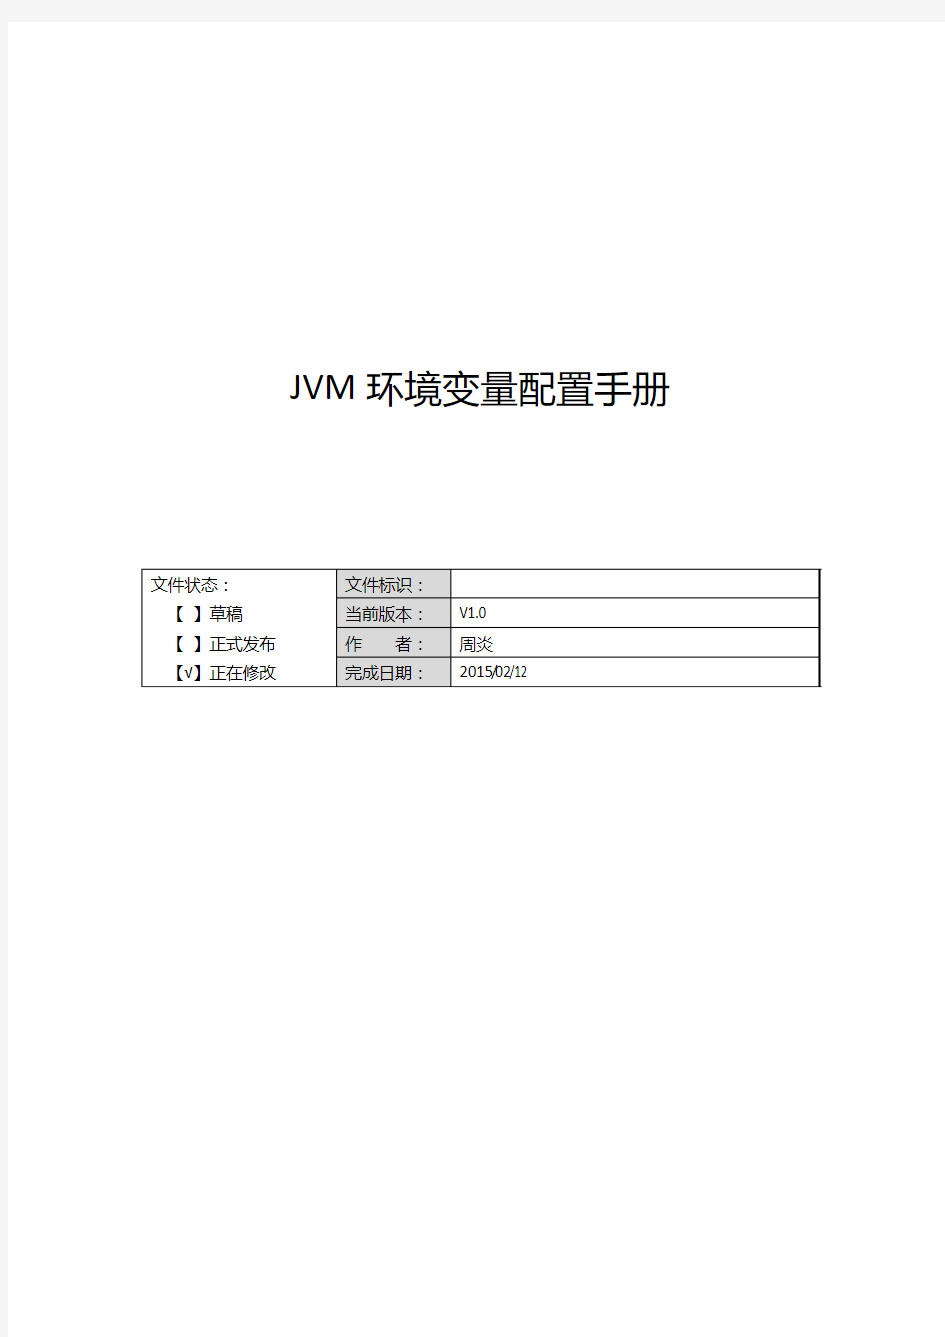 JVM环境变量配置手册